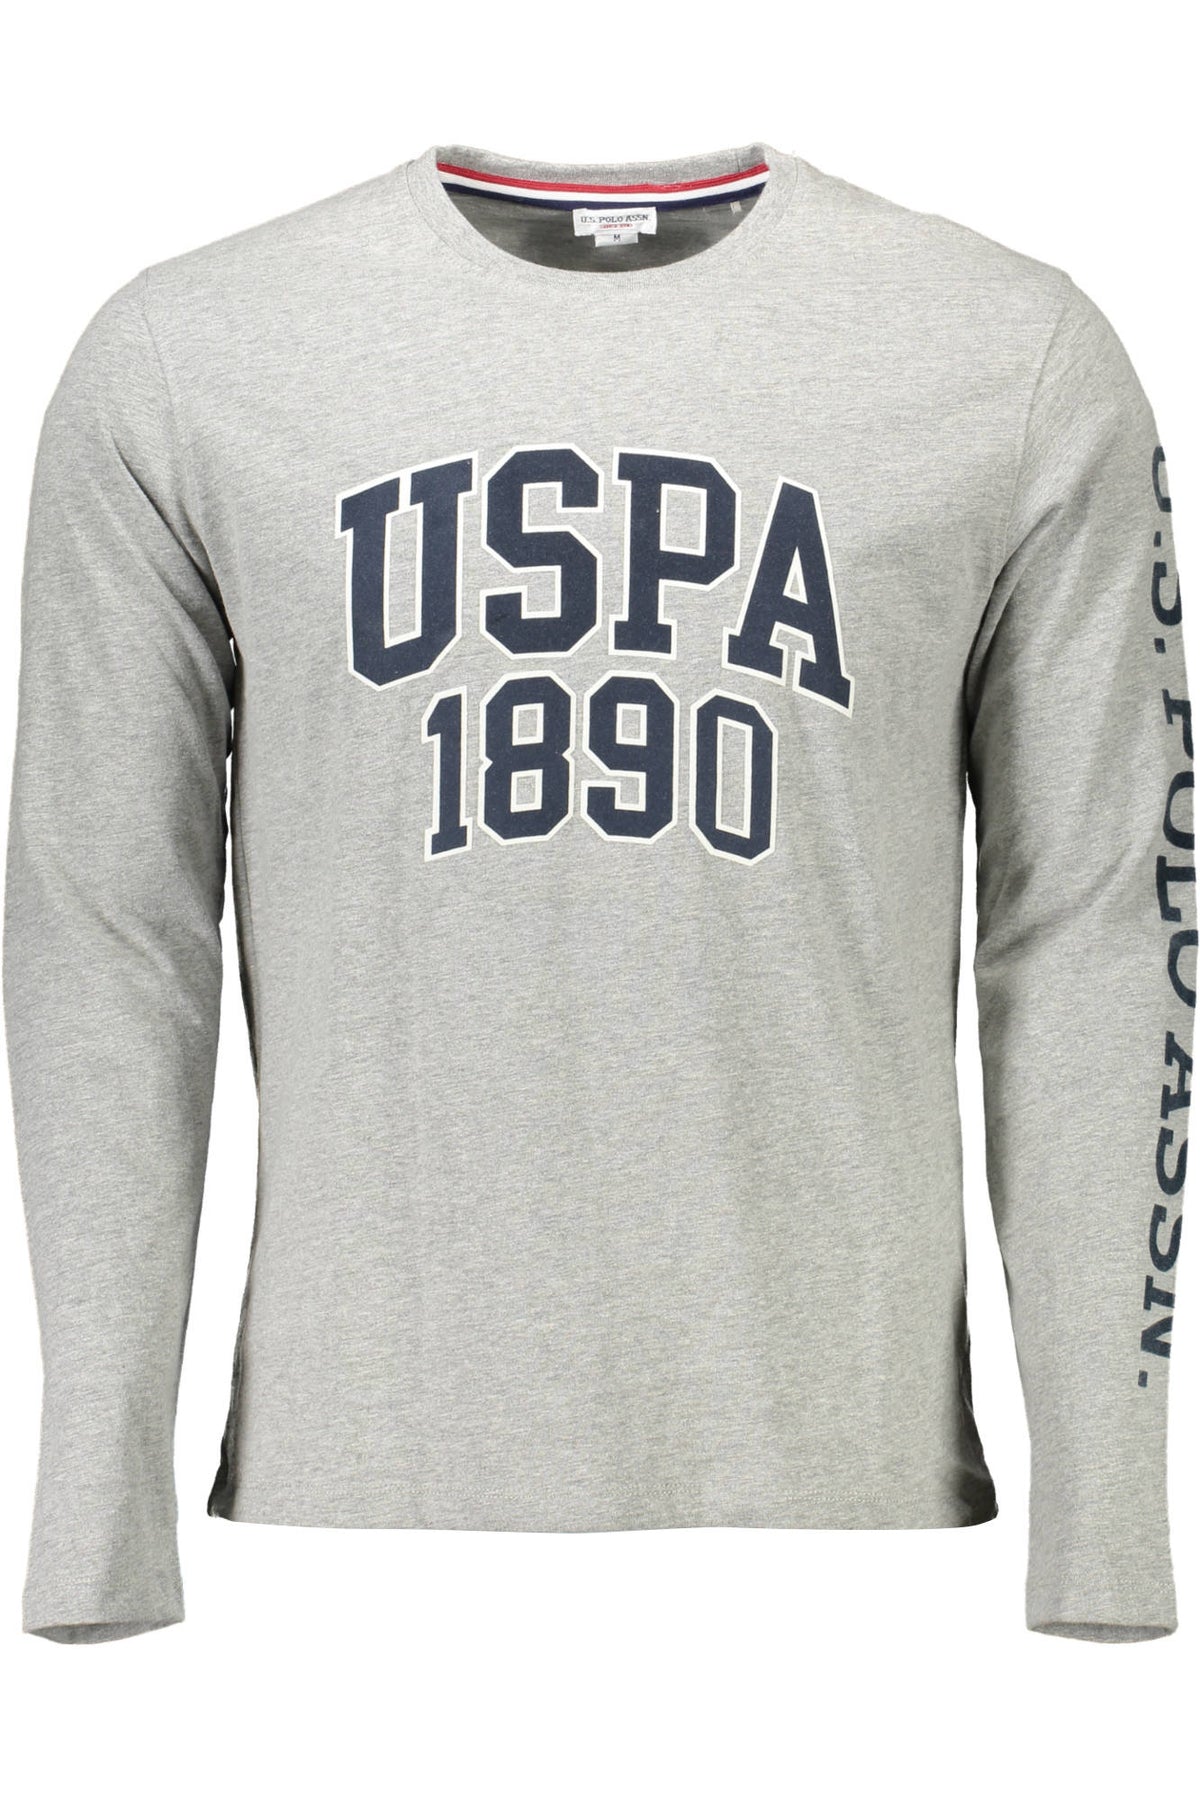 U.S. POLO Herren T-Shirt Shirt Sweatshirt Oberteil mit Rundhalsausschnitt, langärmlig